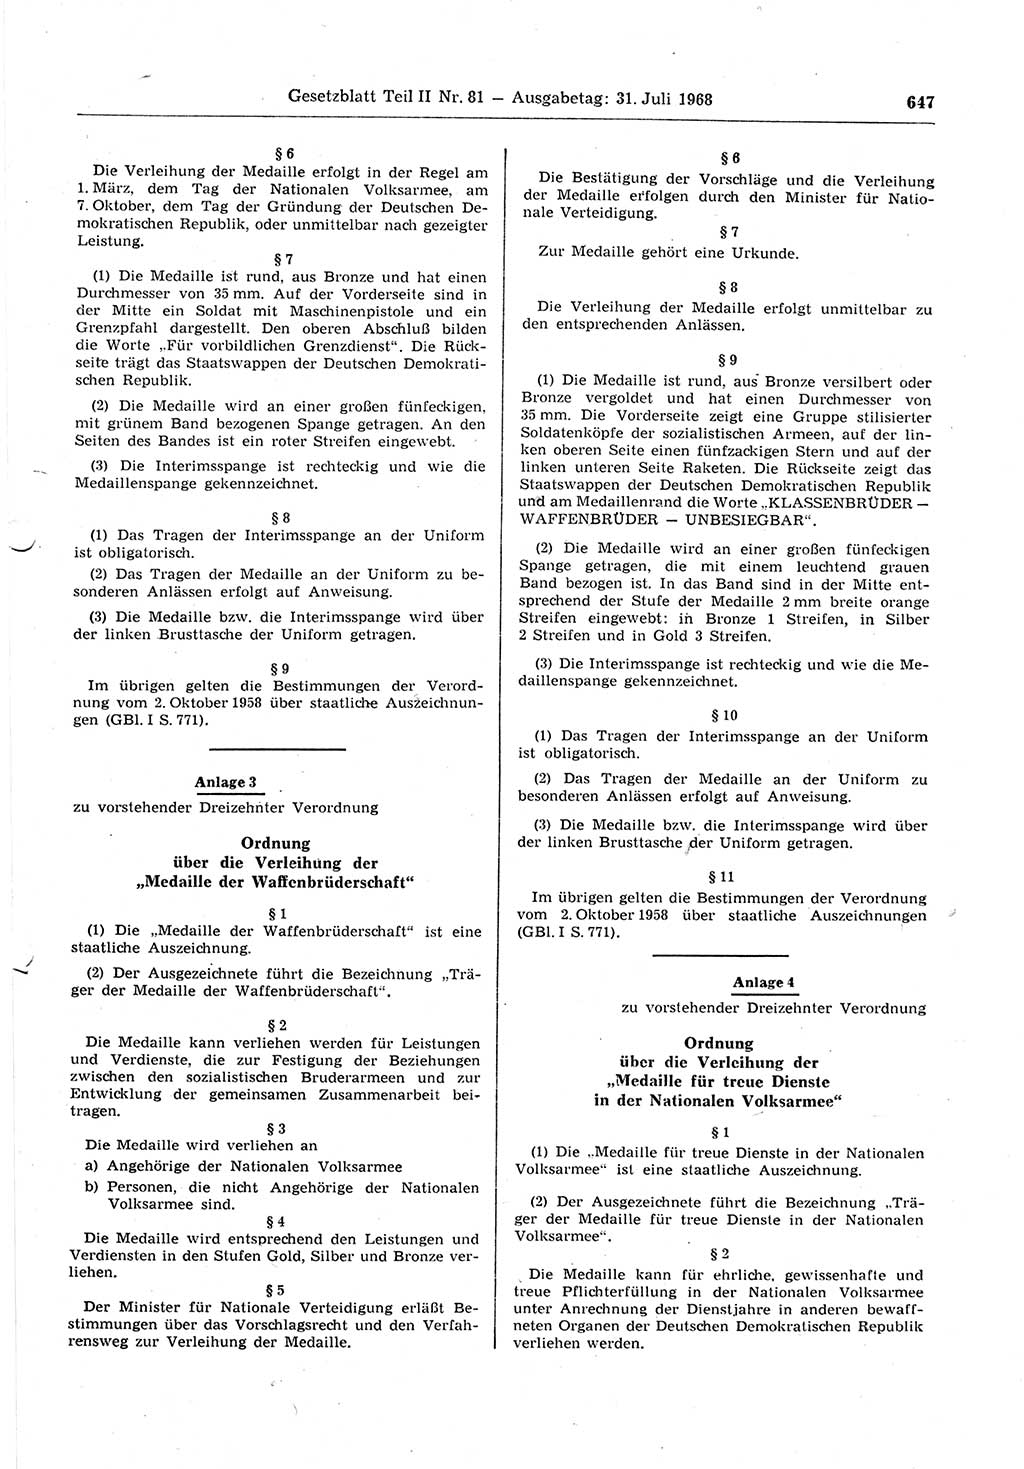 Gesetzblatt (GBl.) der Deutschen Demokratischen Republik (DDR) Teil ⅠⅠ 1968, Seite 647 (GBl. DDR ⅠⅠ 1968, S. 647)